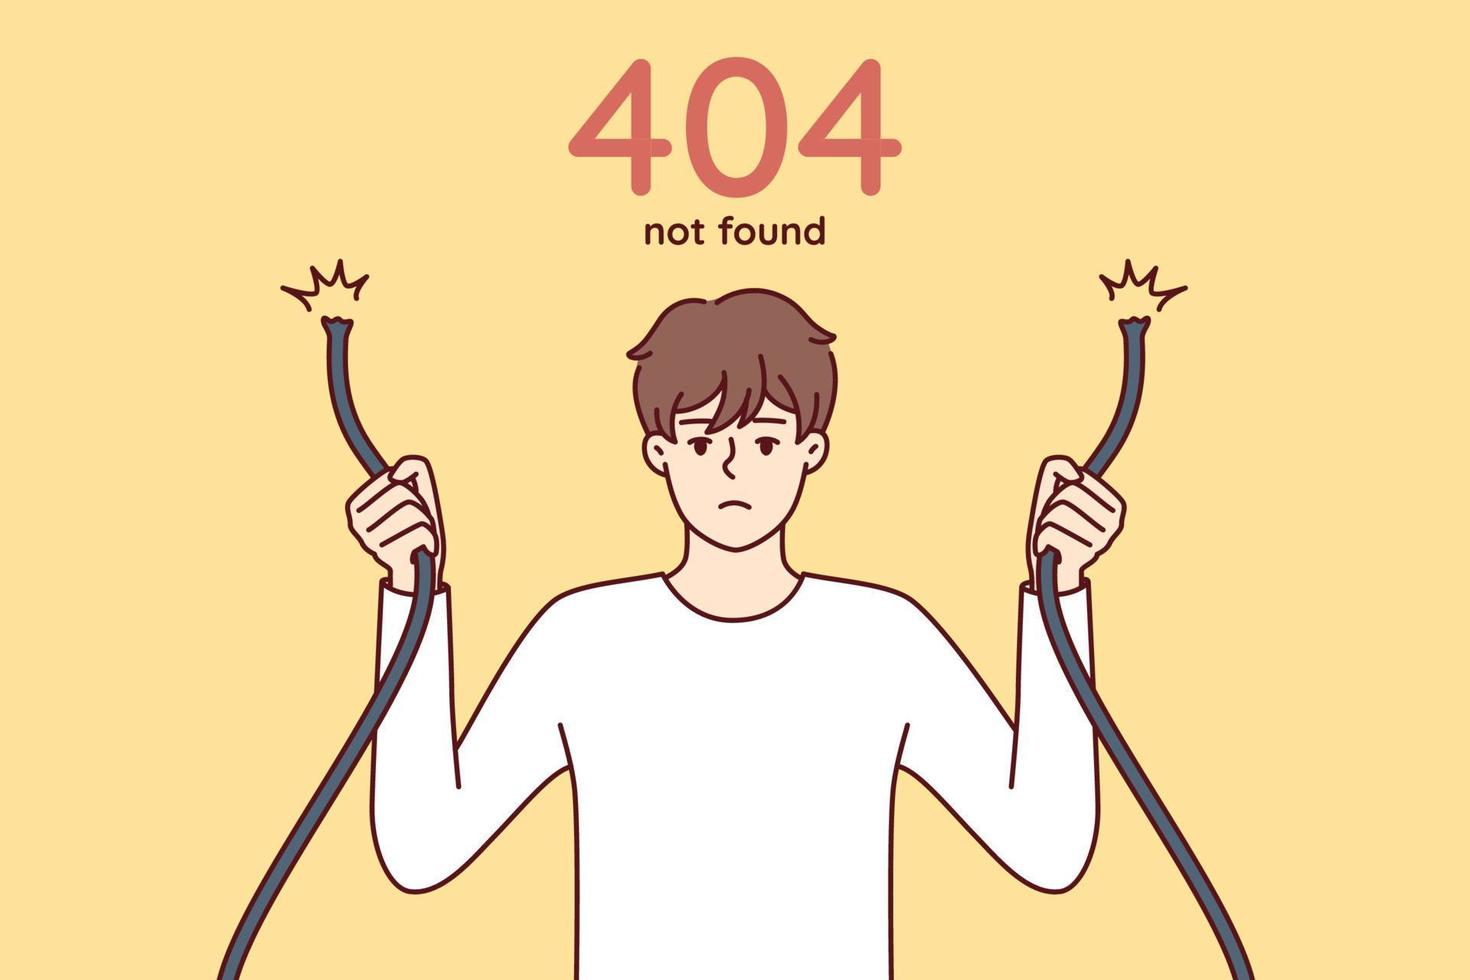 Fehler 404 mit einem traurigen Mann, der einen gebrochenen Draht in den Händen hält und Probleme beim Zugriff auf die Internetseite hat. Typ mit beschädigtem Netzwerkkabel symbolisiert Webfehler beim Versuch, auf den Server zuzugreifen. flaches Vektorbild vektor